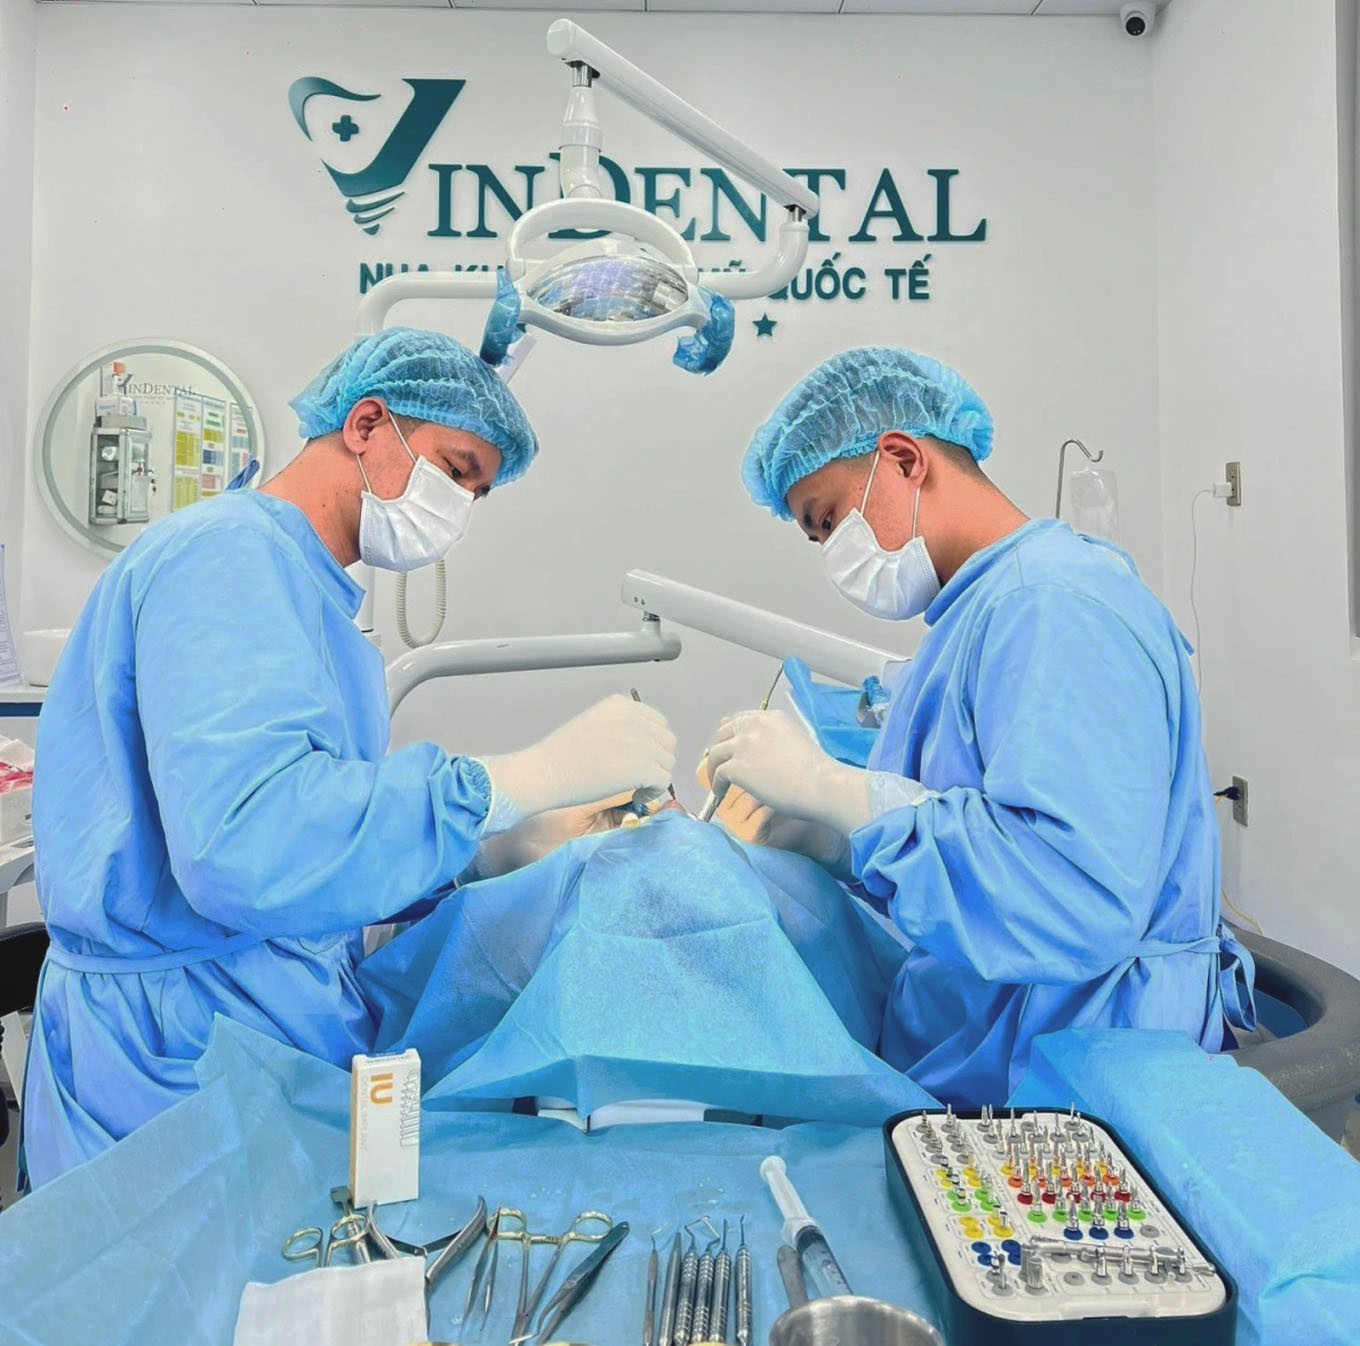 Nha khoa Quốc tế Vindental có ngũ bác sĩ với hơn 10 năm kinh nghiệm trong lĩnh vực nha khoa và máy móc, trang thiết bị được nhập khẩu từ Hàn Quốc và châu Âu, phòng Implant hiện đại, vô trùng, khép kín theo tiêu chuẩn của Bộ Y tế, sử dụng 100% trụ Implant nhập khẩu chính hãng